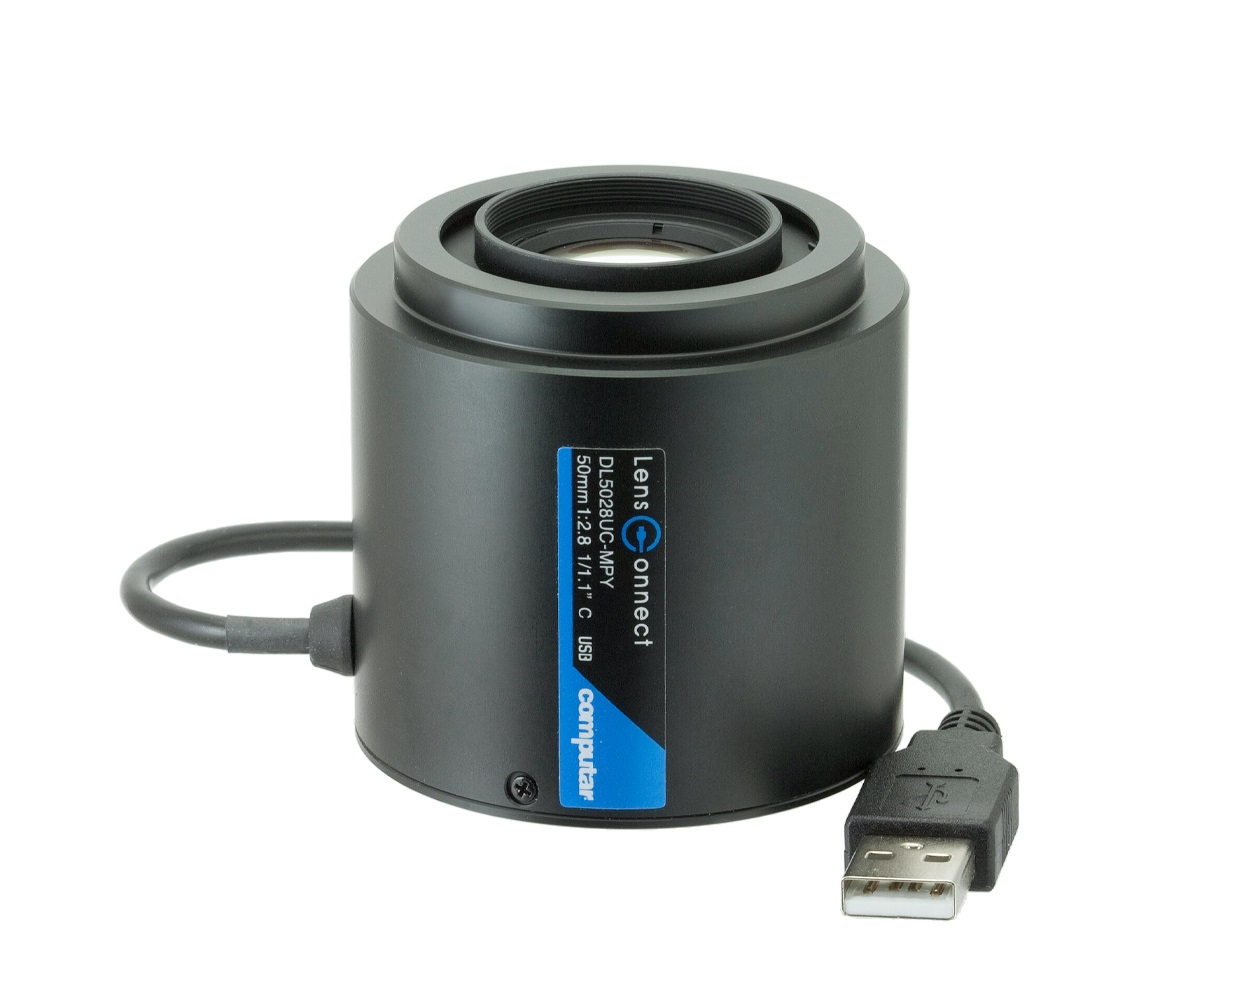 Ống kính - Lens camera Computar DL5028UC-MPY